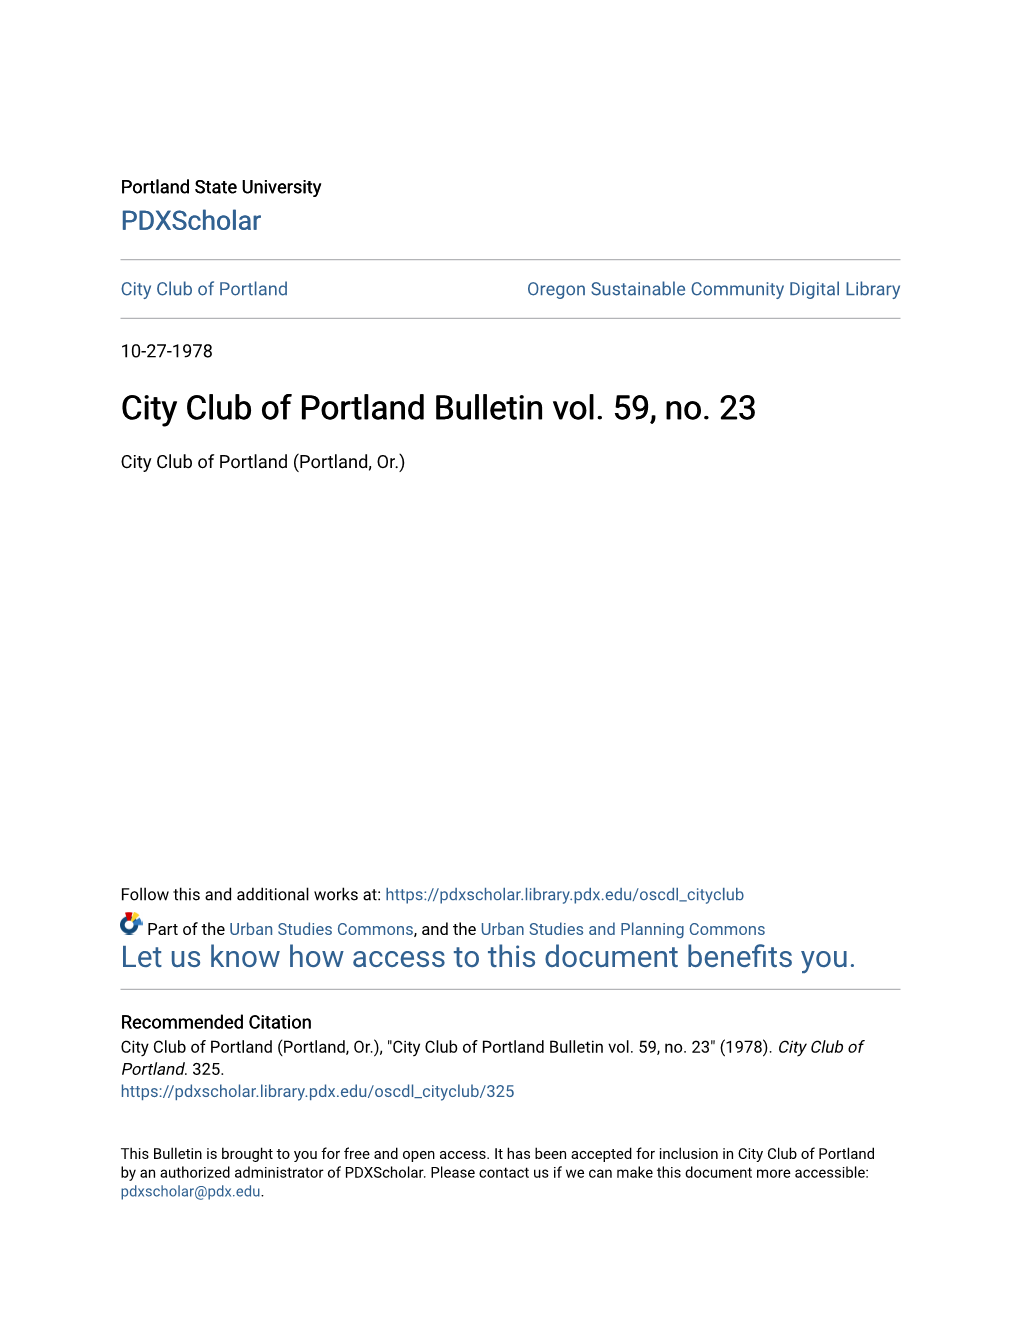 City Club of Portland Bulletin Vol. 59, No. 23